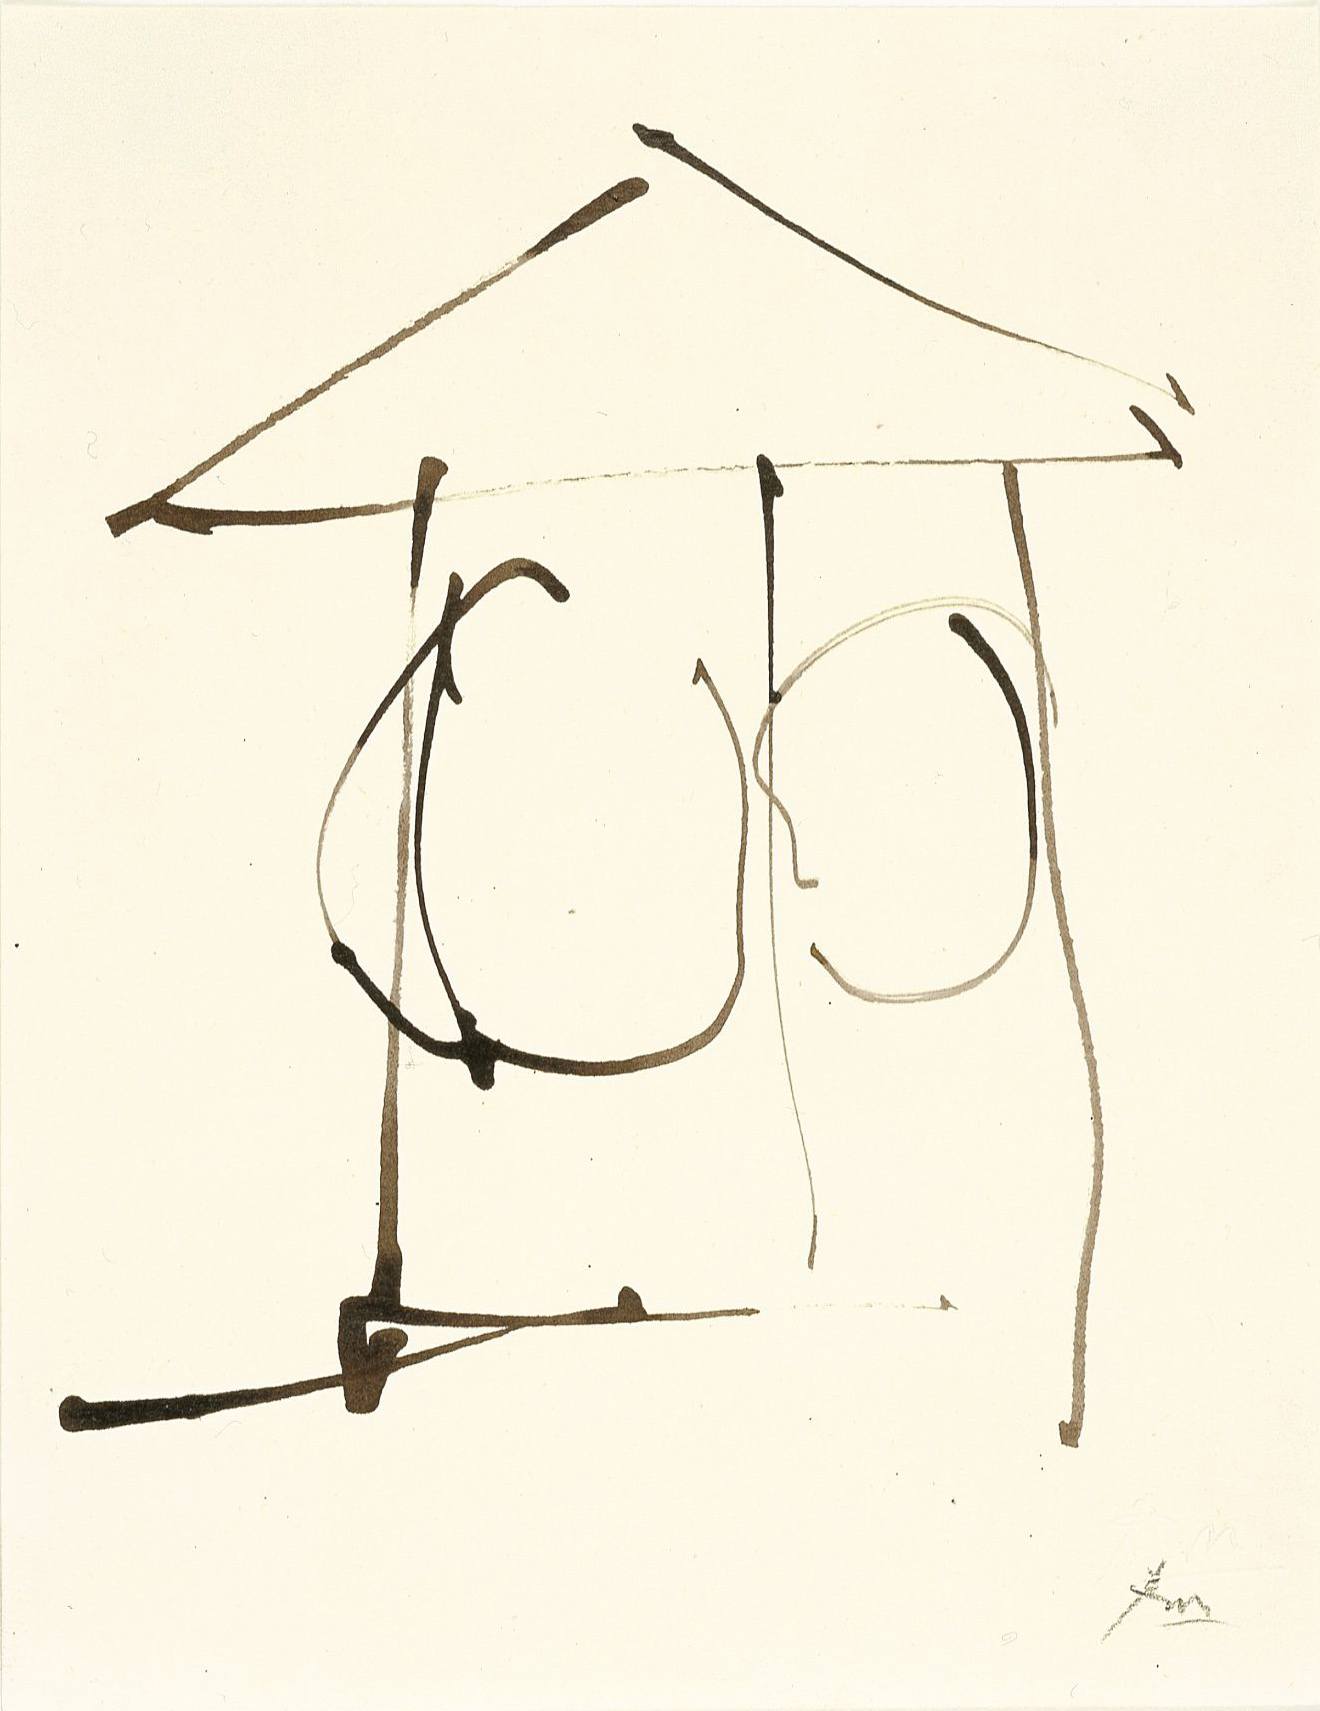 Dedalus Sketchbook: Mulligan’s Tower, 1982, ink on paper, 7 3/4 ✕ 5 7/8 in. (19.7 ✕ 14.9 cm)